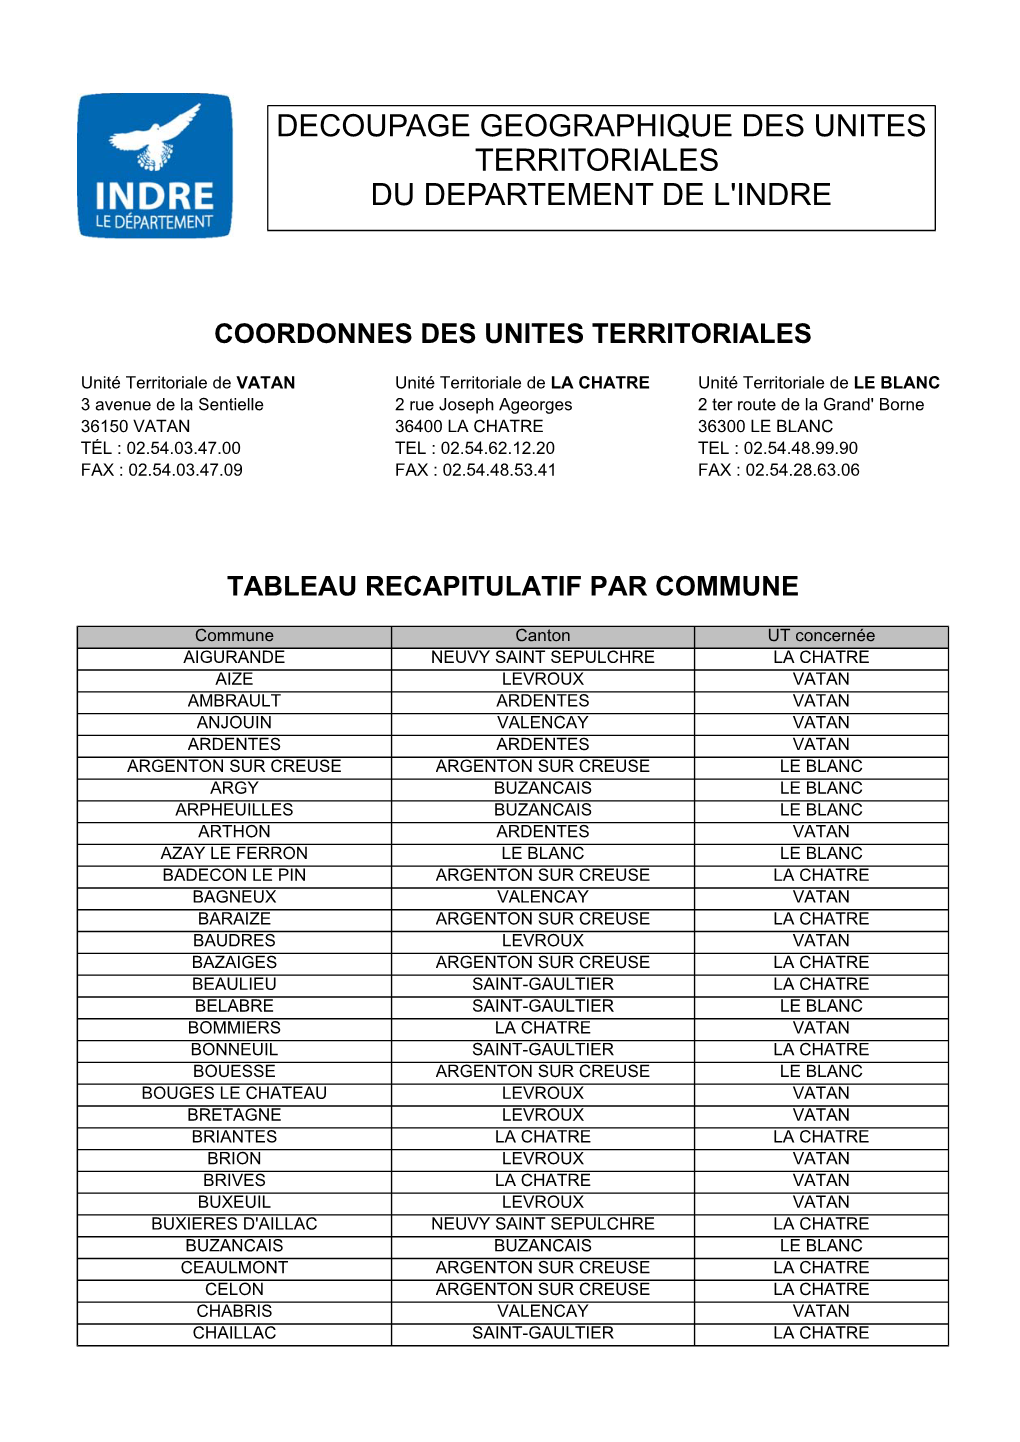 Coordonnees Et Repartition Des Communes Par UT